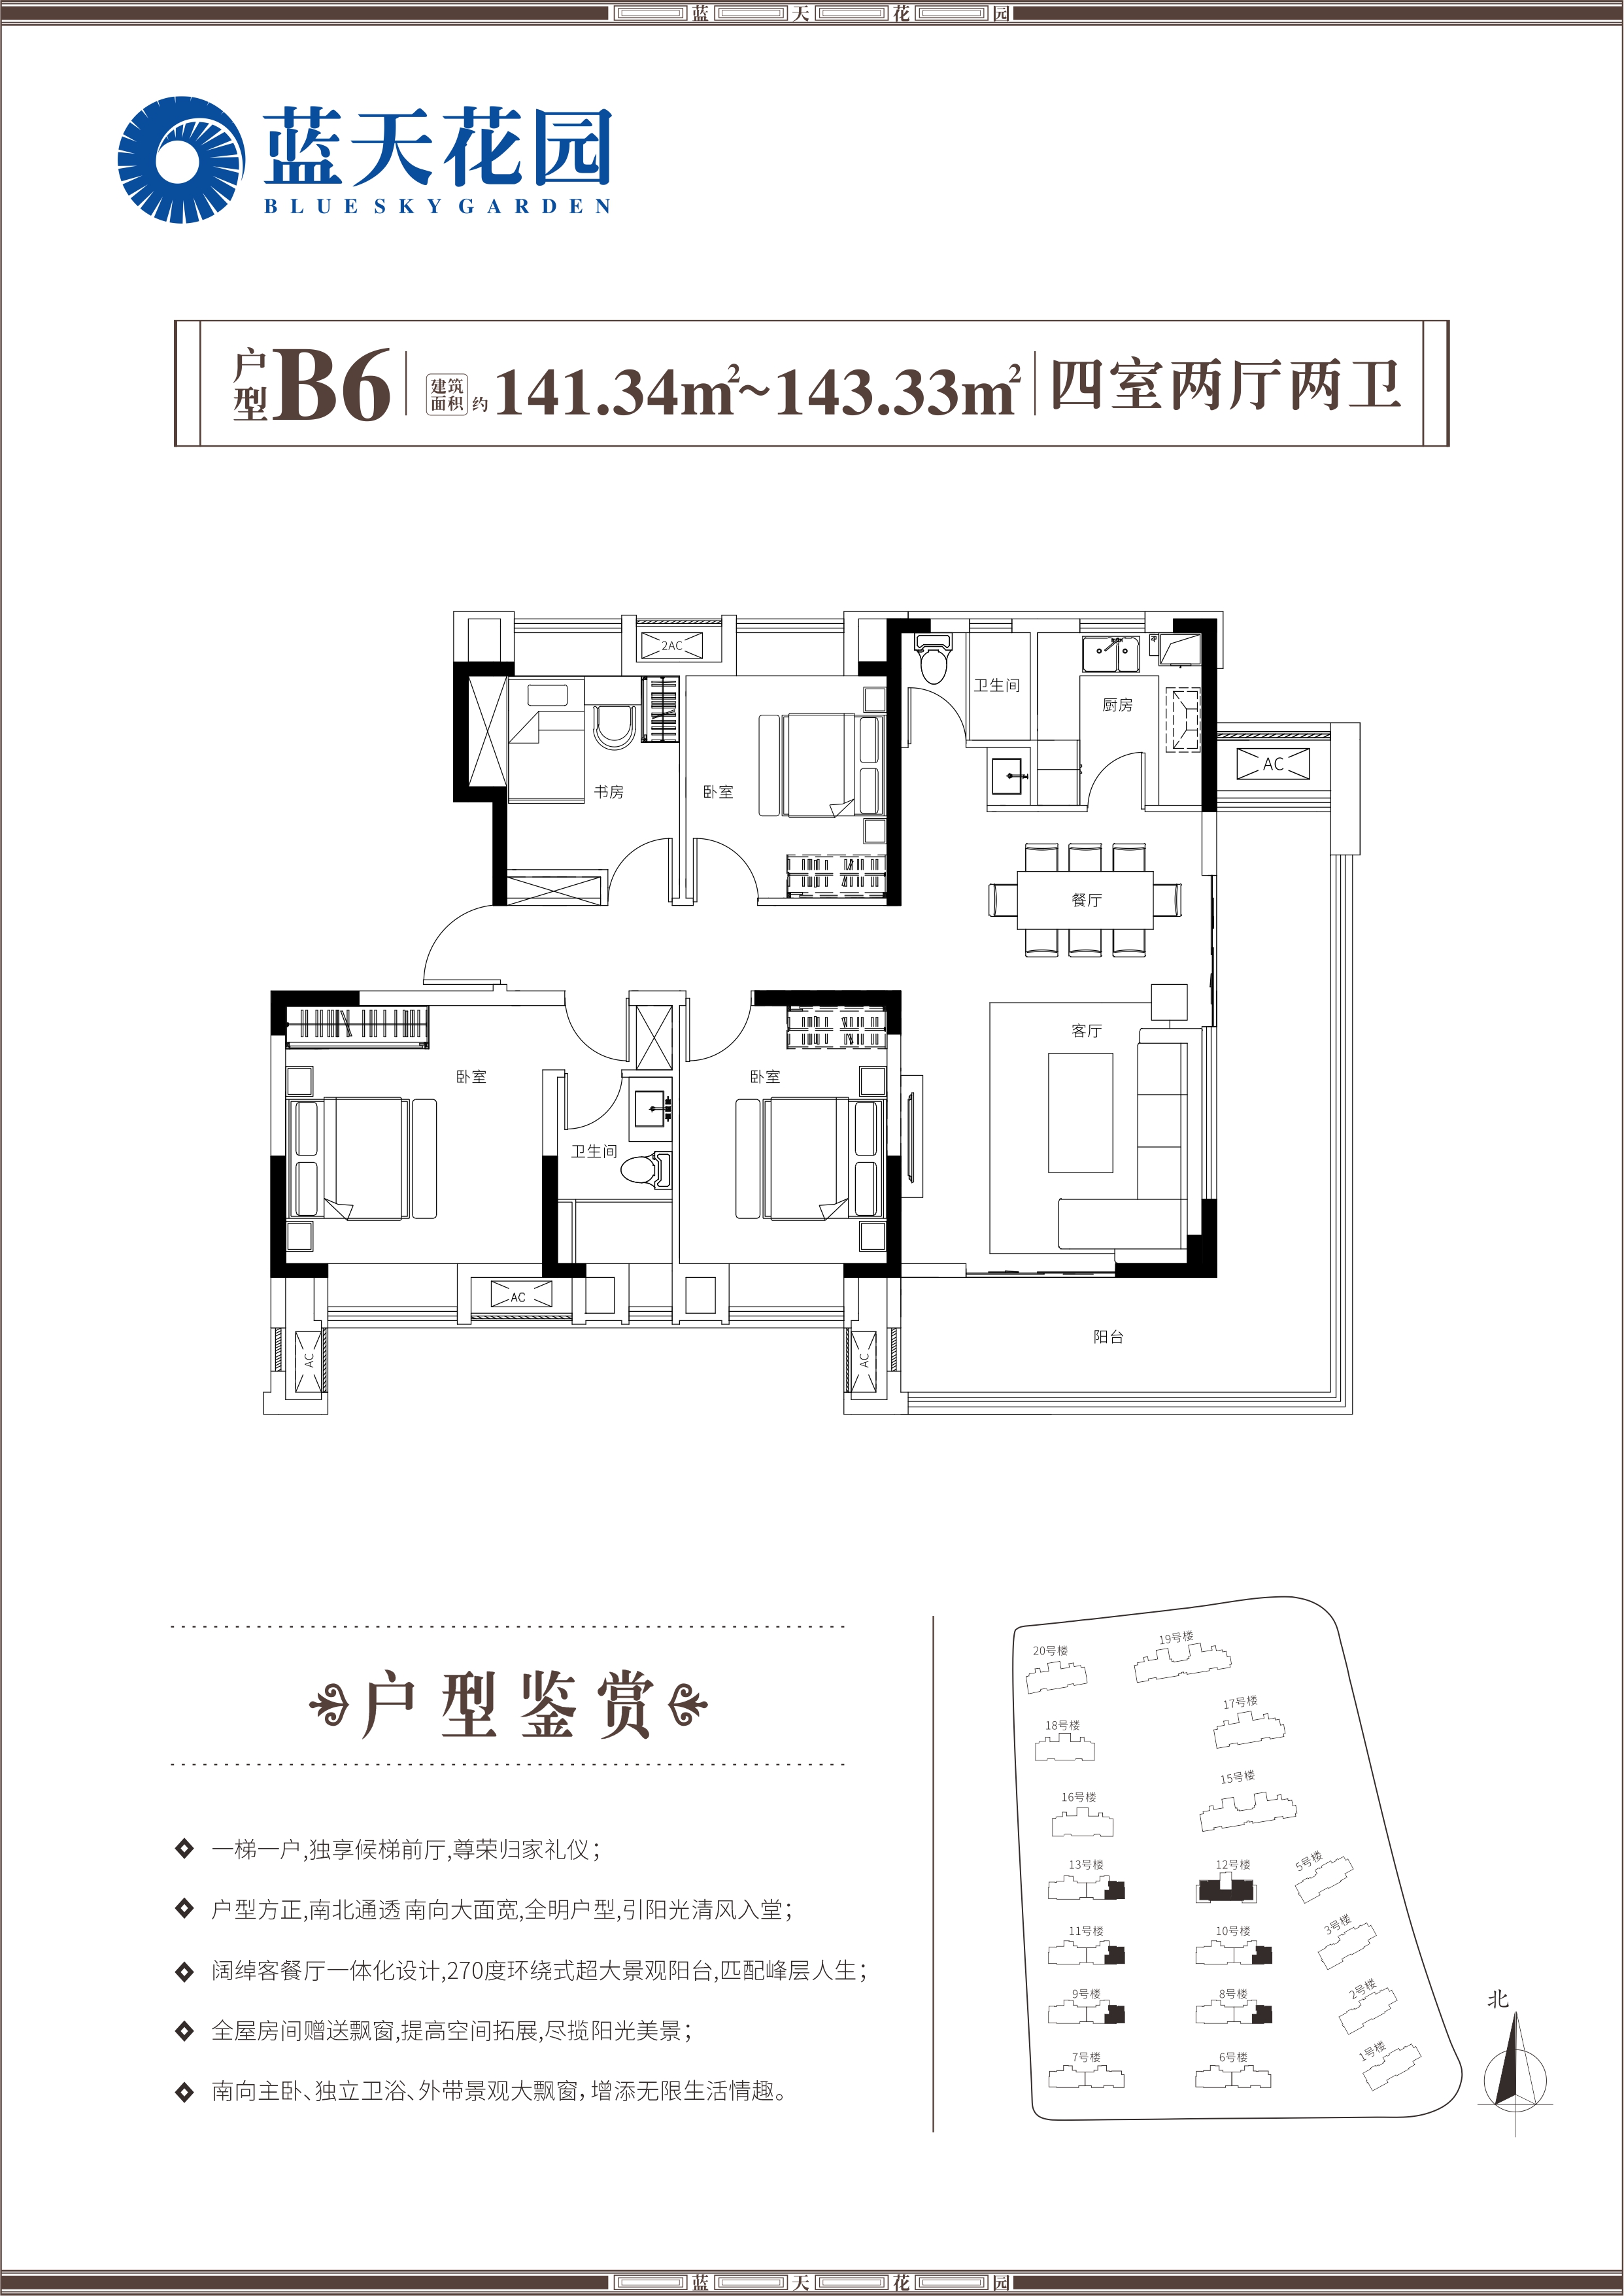  4室户型：4室2厅2卫 面积：141.34-143.33㎡ 